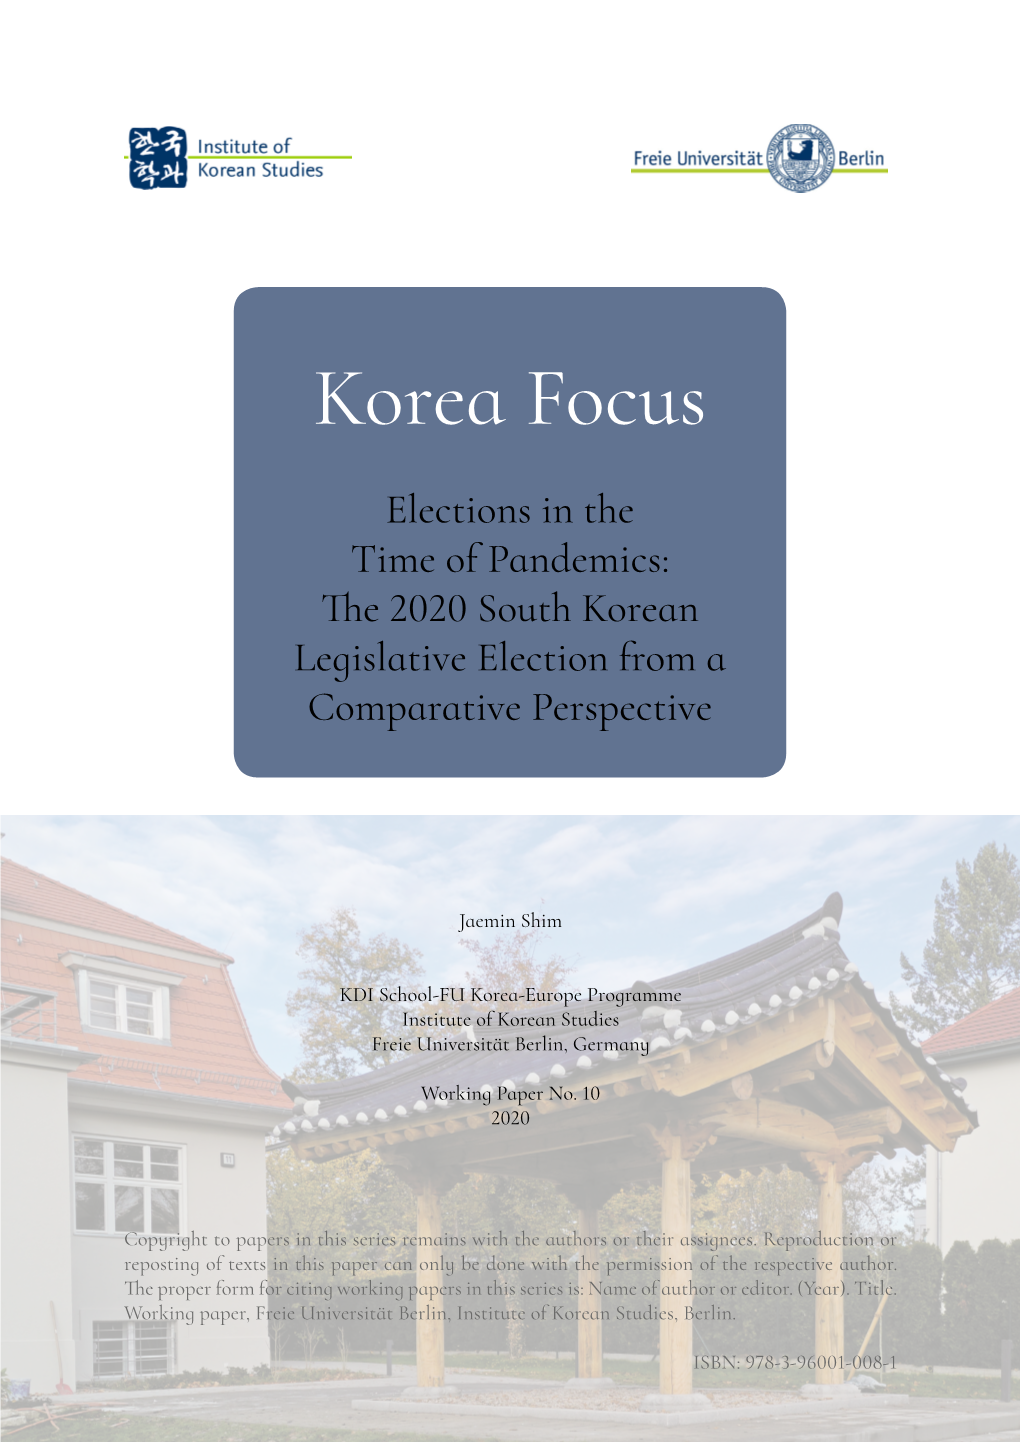 Korea Focus Working Paper No. 10